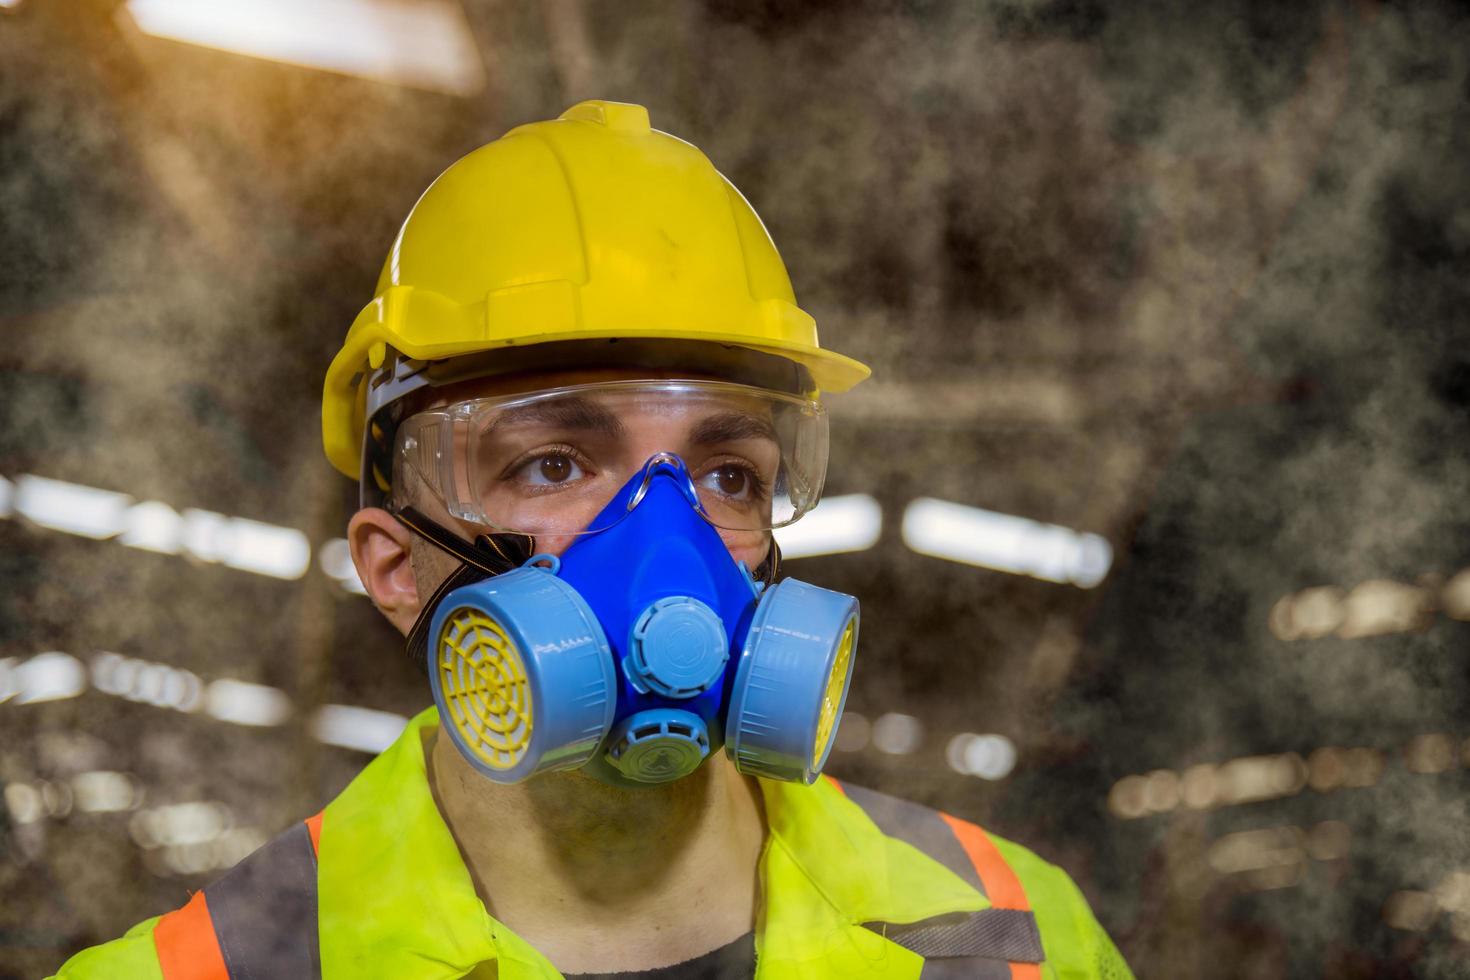 ingenieursindustrie die veiligheidsuniform draagt, zwarte handschoenen, gasmasker voelt stikken bij het controleren van chemische tank in fabriekswerk in de industrie. foto